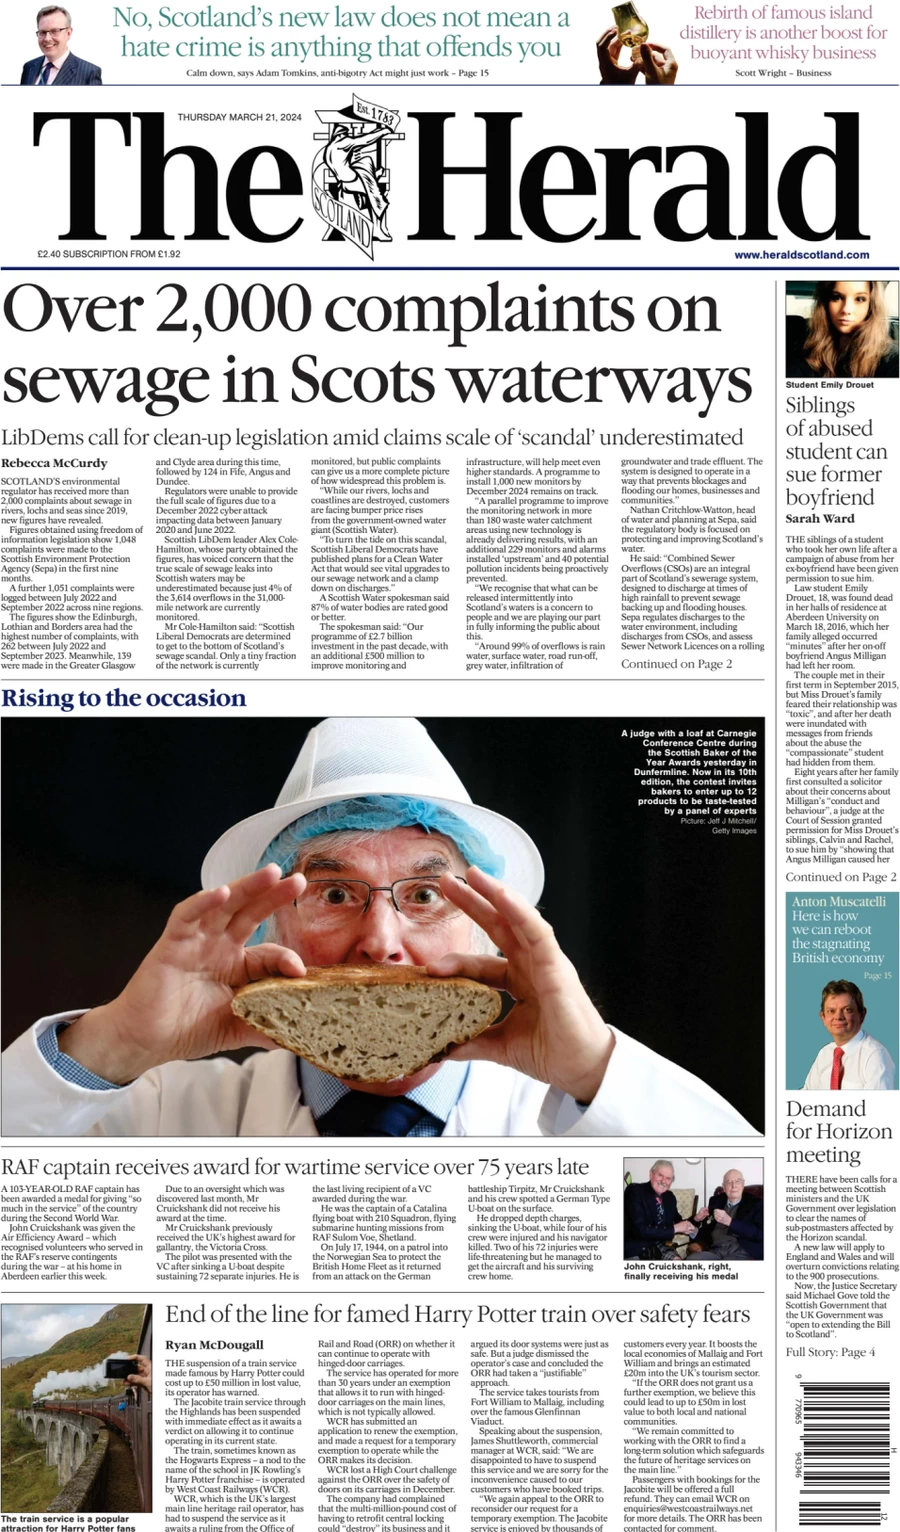 Anteprima prima pagina della rasegna stampa di ieri 2024-03-21 - the-herald-scotland/